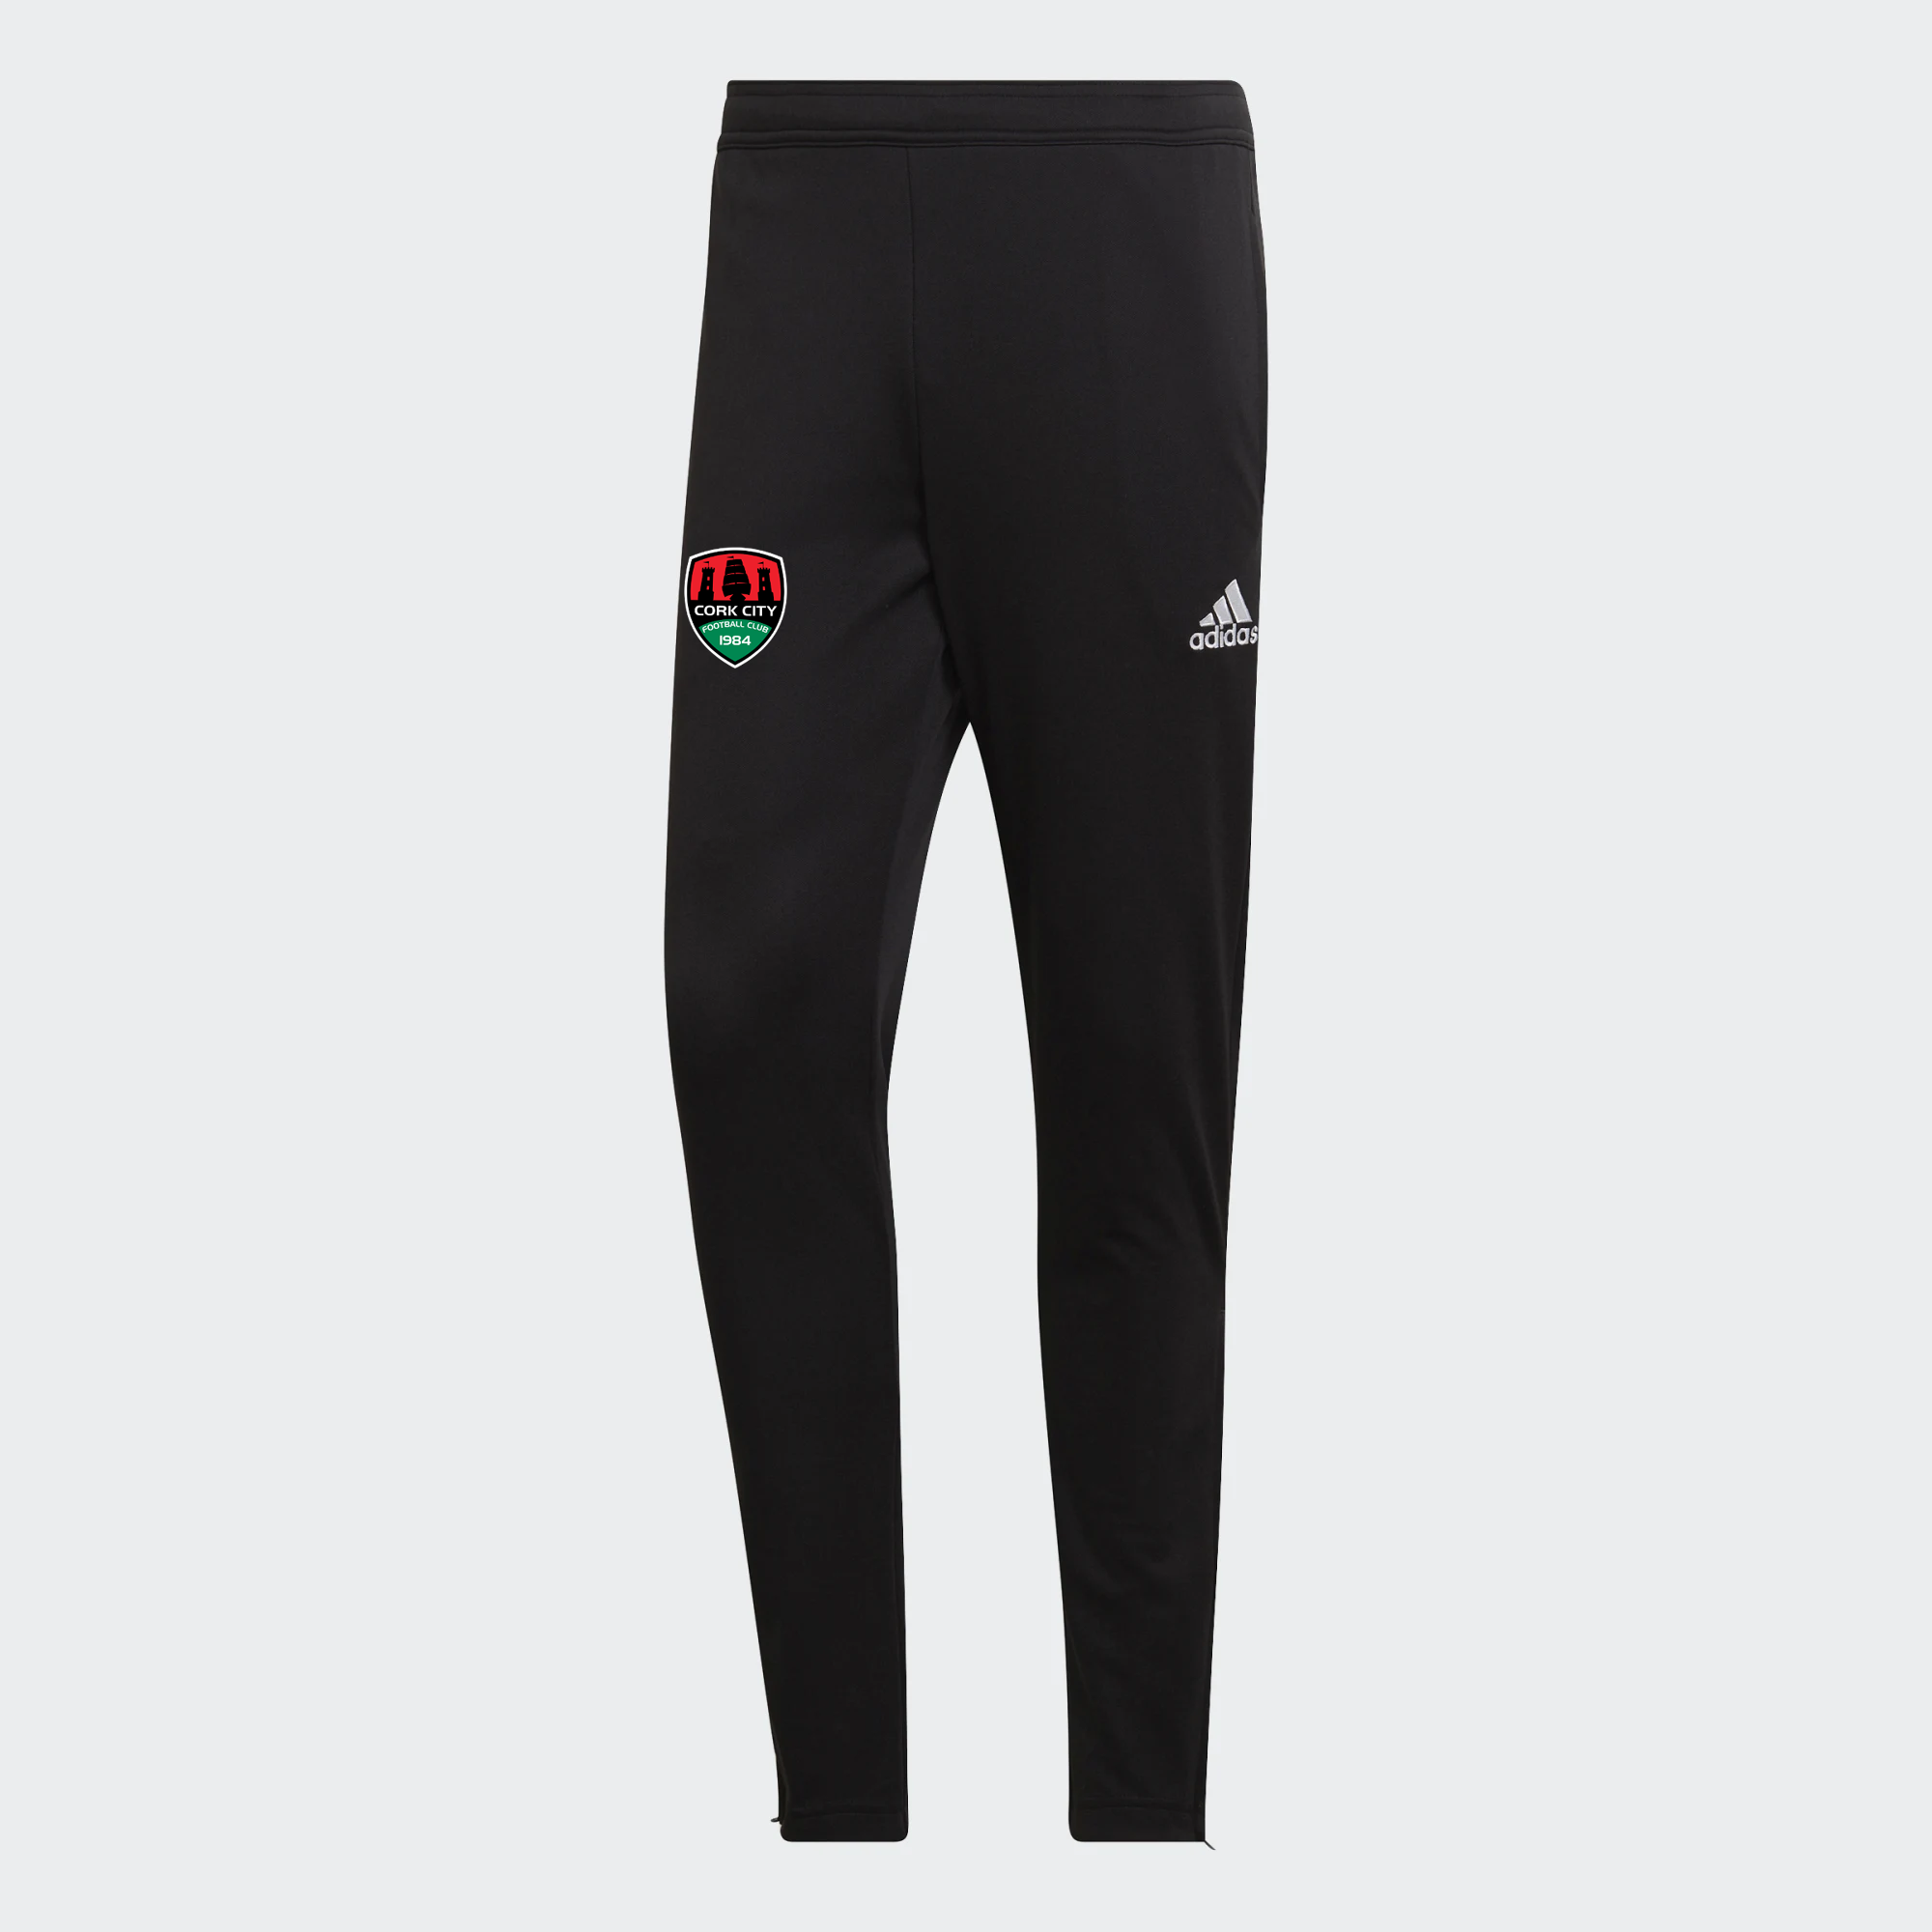 Adidas 22 Black Training Pants - Adult